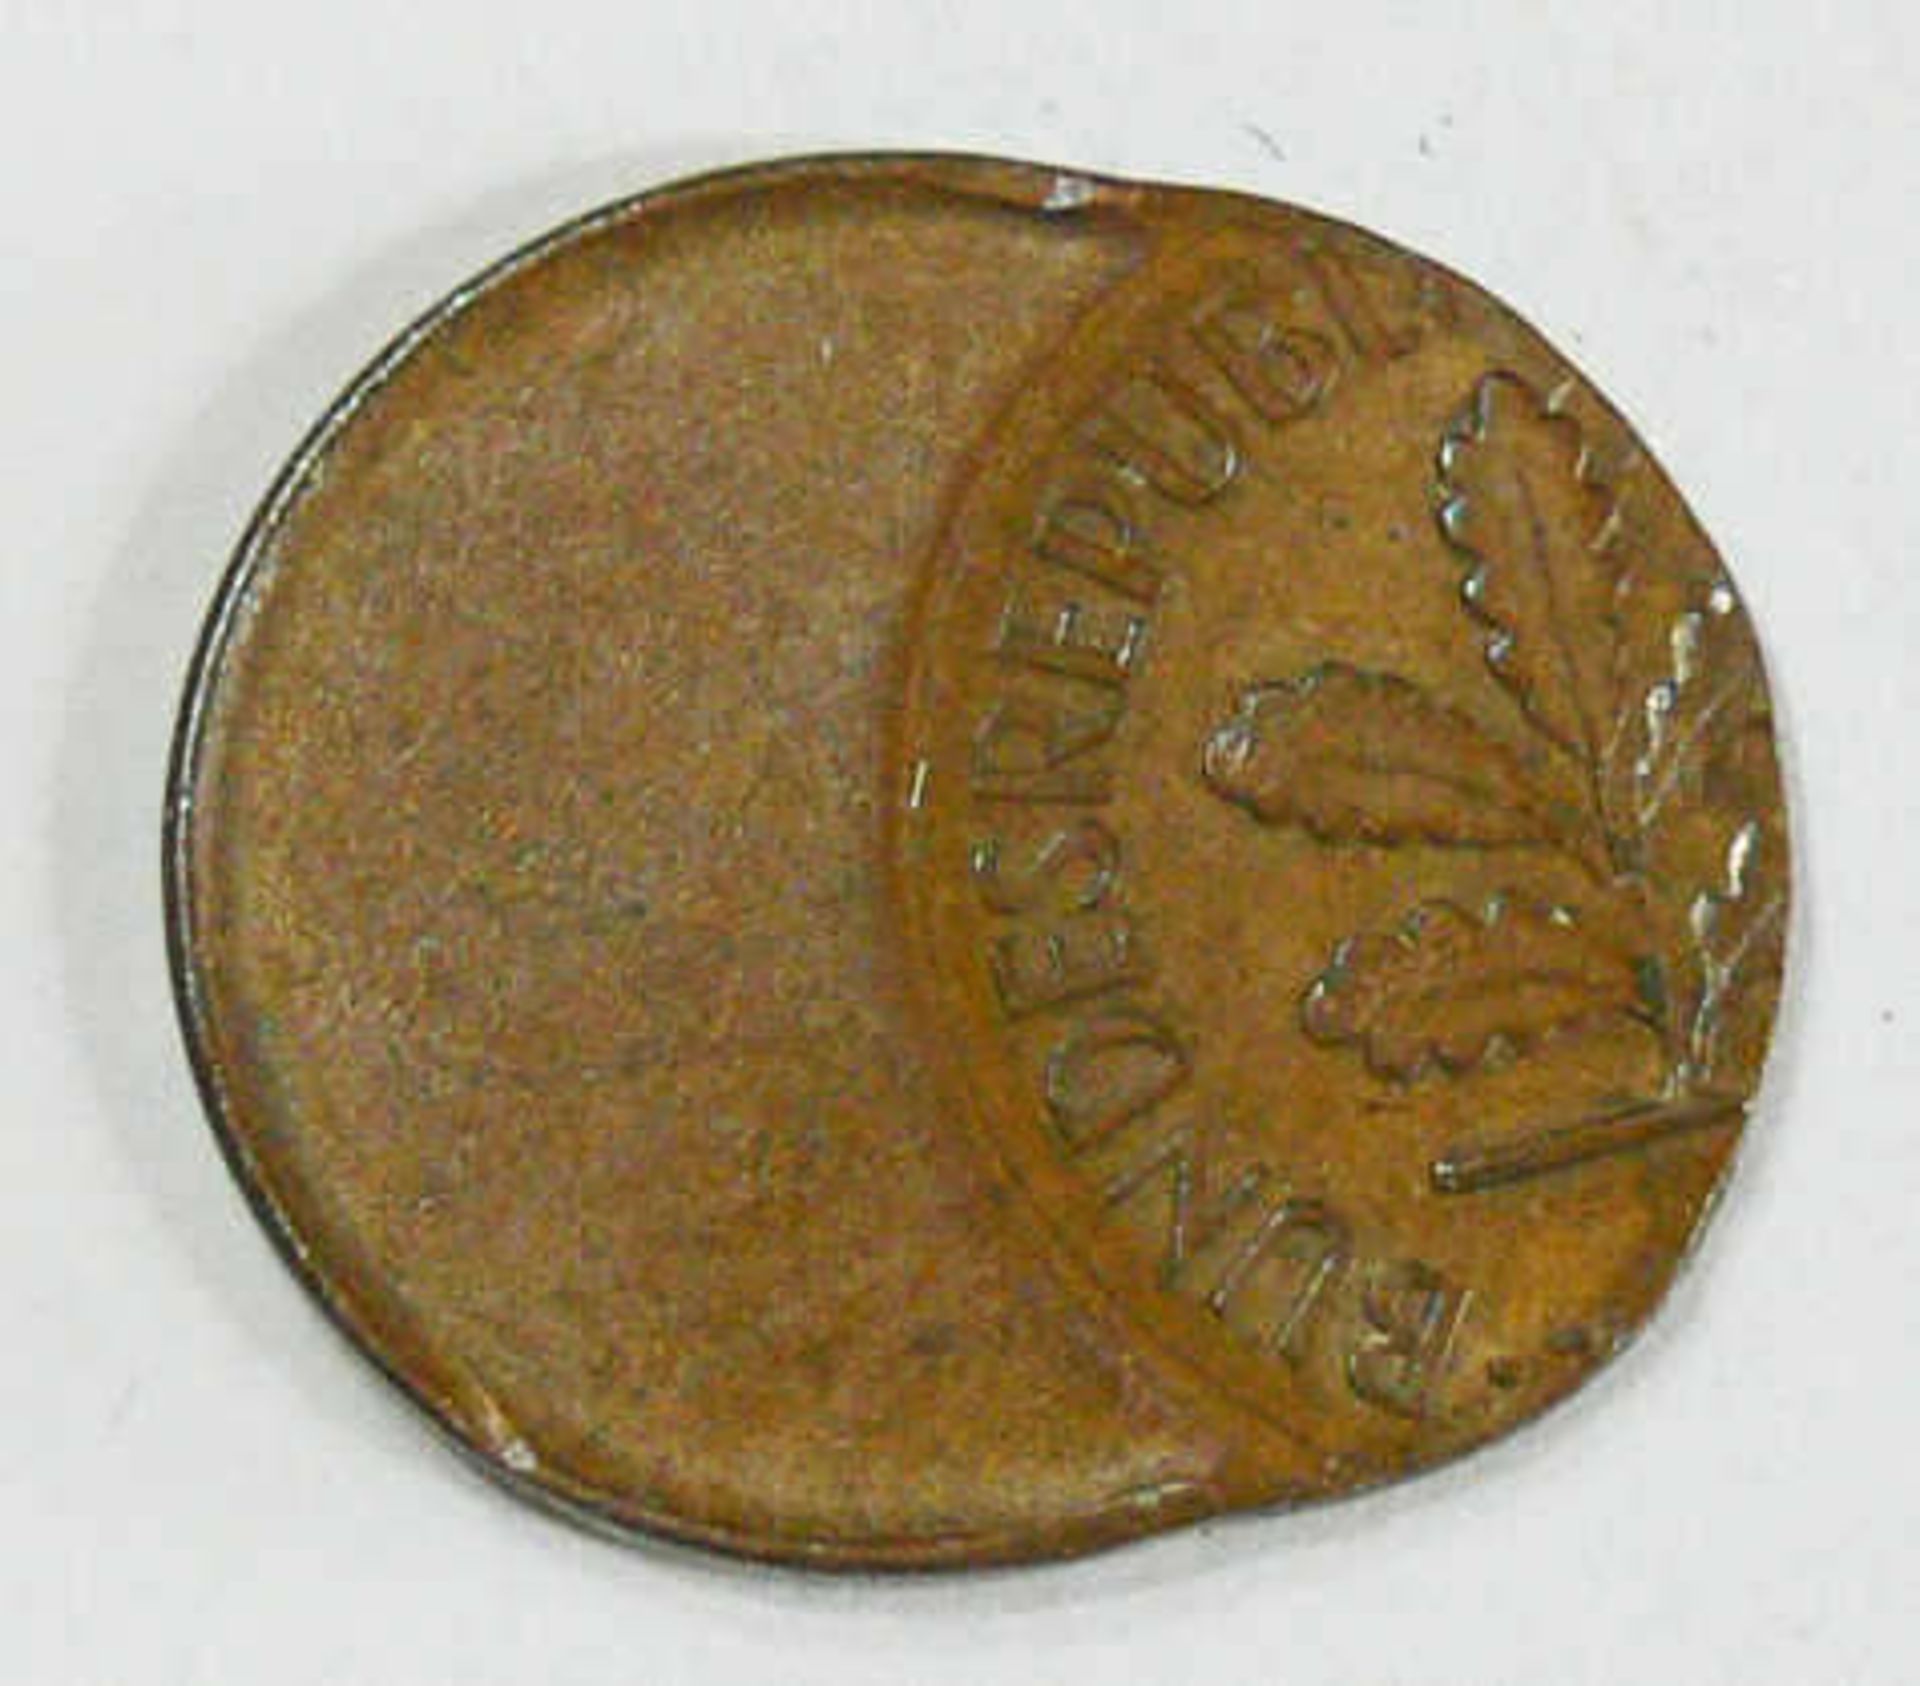 BRD, 1 Pfennig - Münze, Fehlprägung, dezentriert. BRD, 1 Pfennig coin, misprinted, decentered. - Bild 2 aus 2